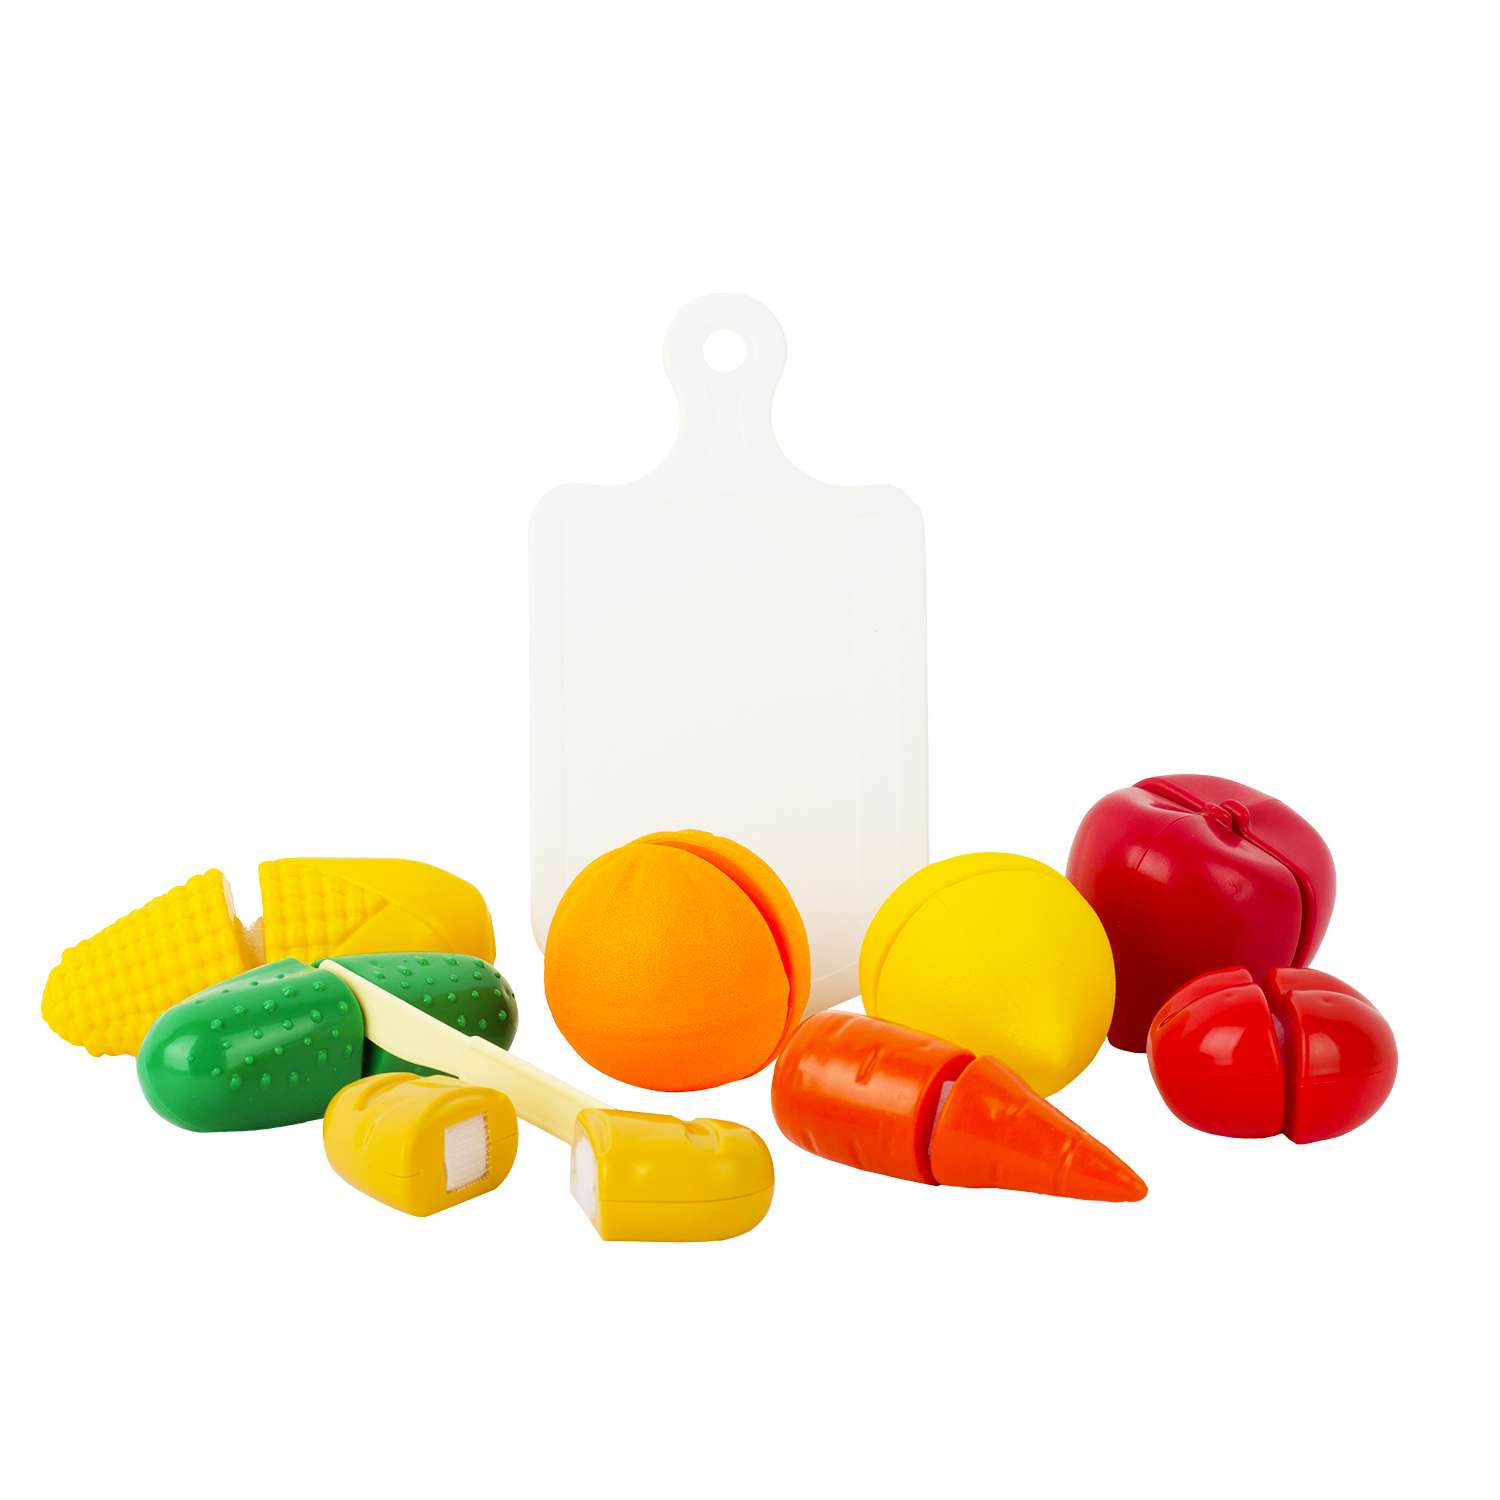 Игровой набор Стром Режем продукты (10 предметов) - фото 1